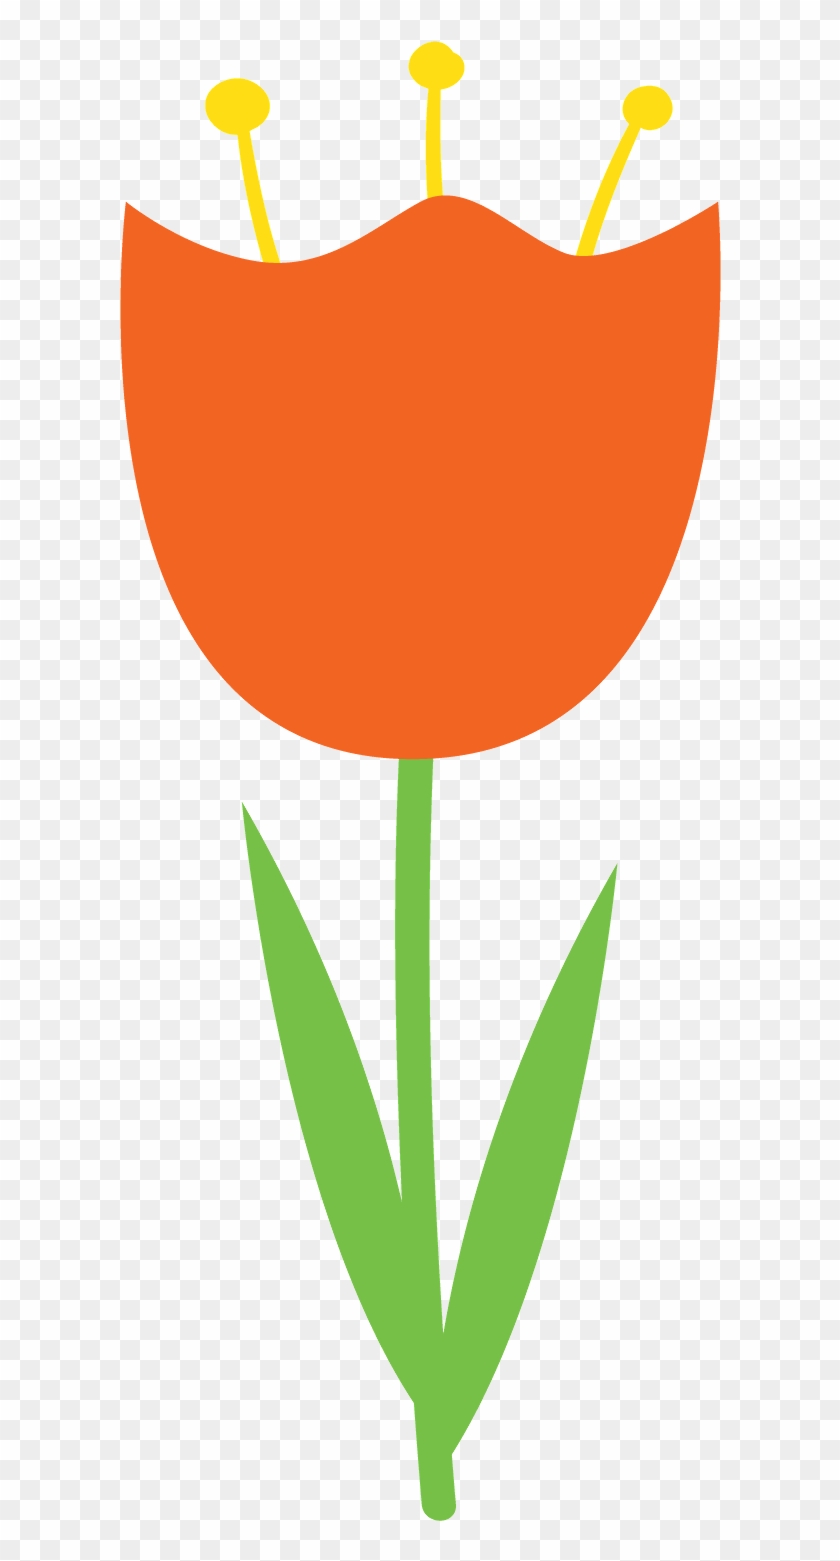 Corujas 2 - Minus - Orange Tulip Clip Art #384279